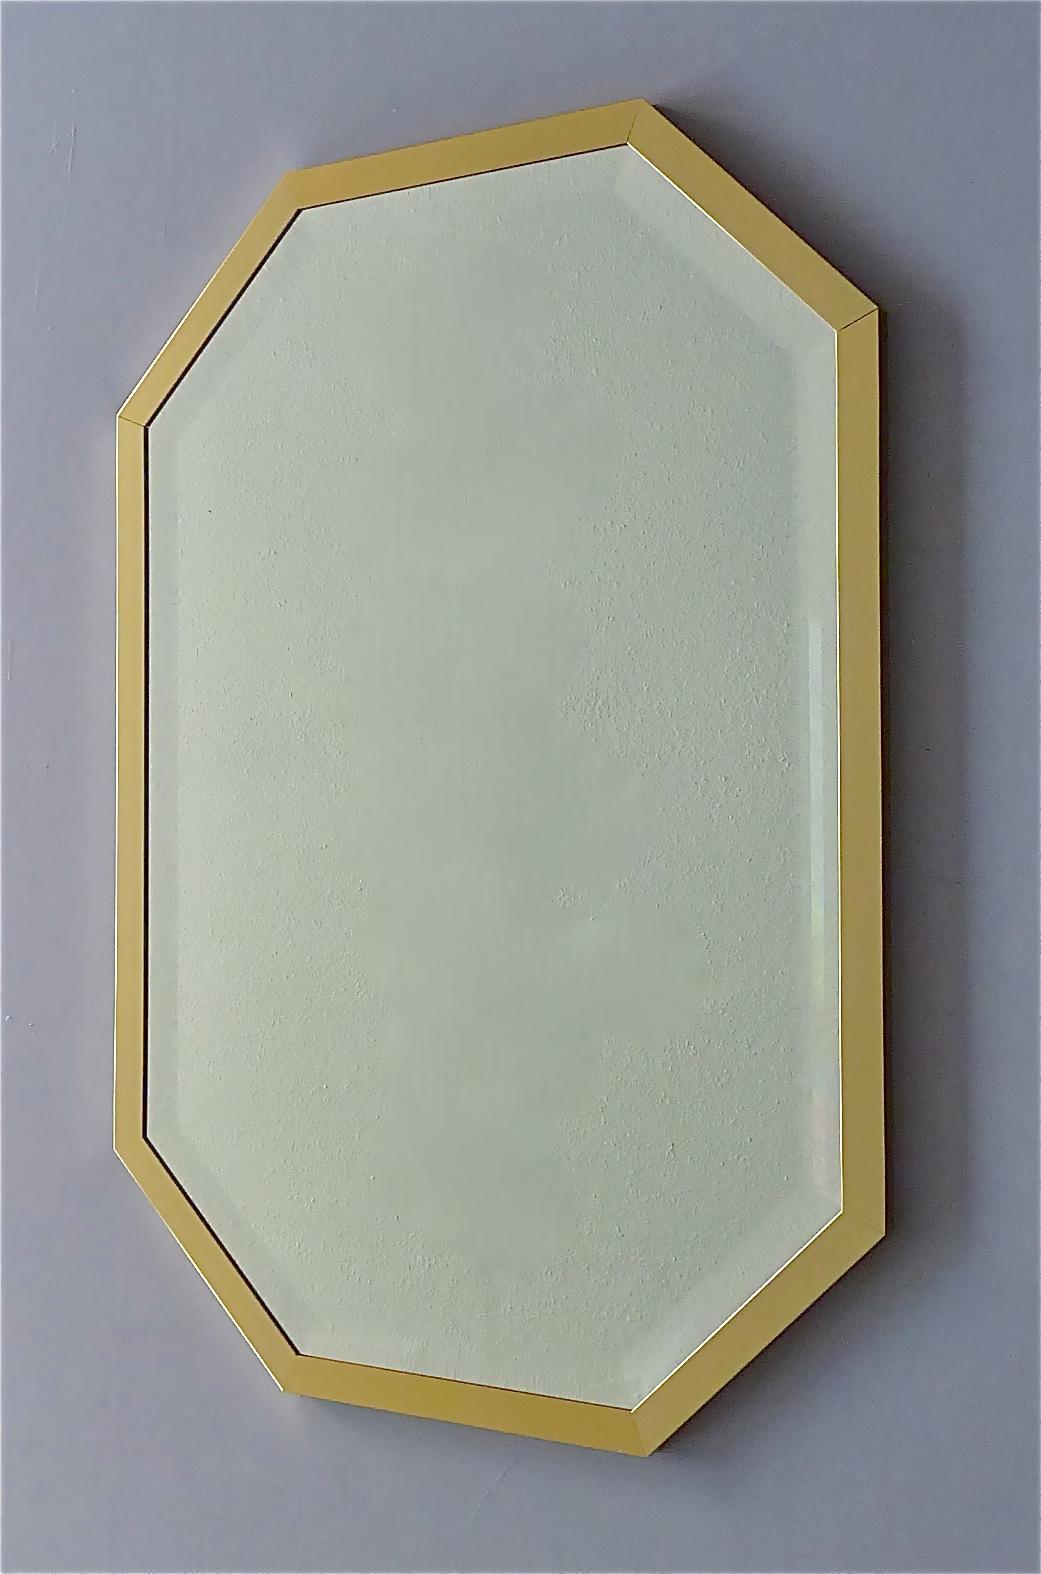 Magnifique grand miroir octogonal de style Maison Jansen, Gabriella Crespi, Willy Rizzo, fabriqué en Allemagne vers les années 1970. Le miroir de haute qualité a une forme octogonale avec un cadre en laiton doré et un miroir en cristal facetté. Le